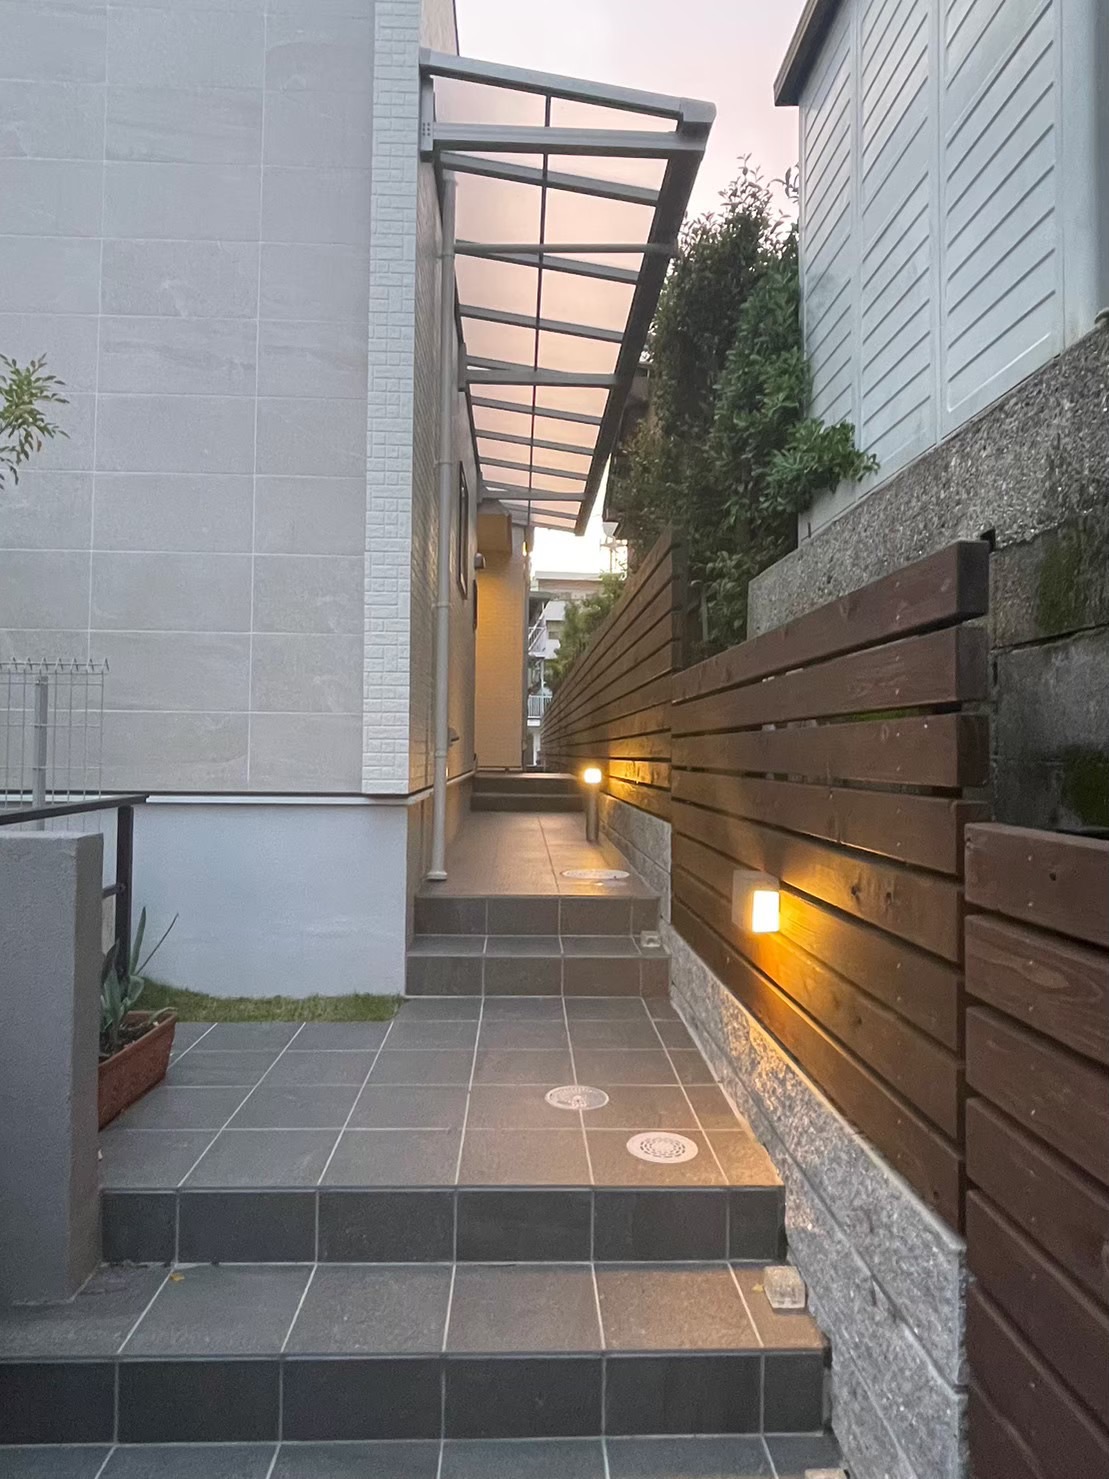 愛知県名古屋市名東区のウッドフレンズ住宅、外構工事です。駐車場のカーポートは三協アルミ製のスカイリードを採用。【パートナーホーム施工事例】|パートナーホーム